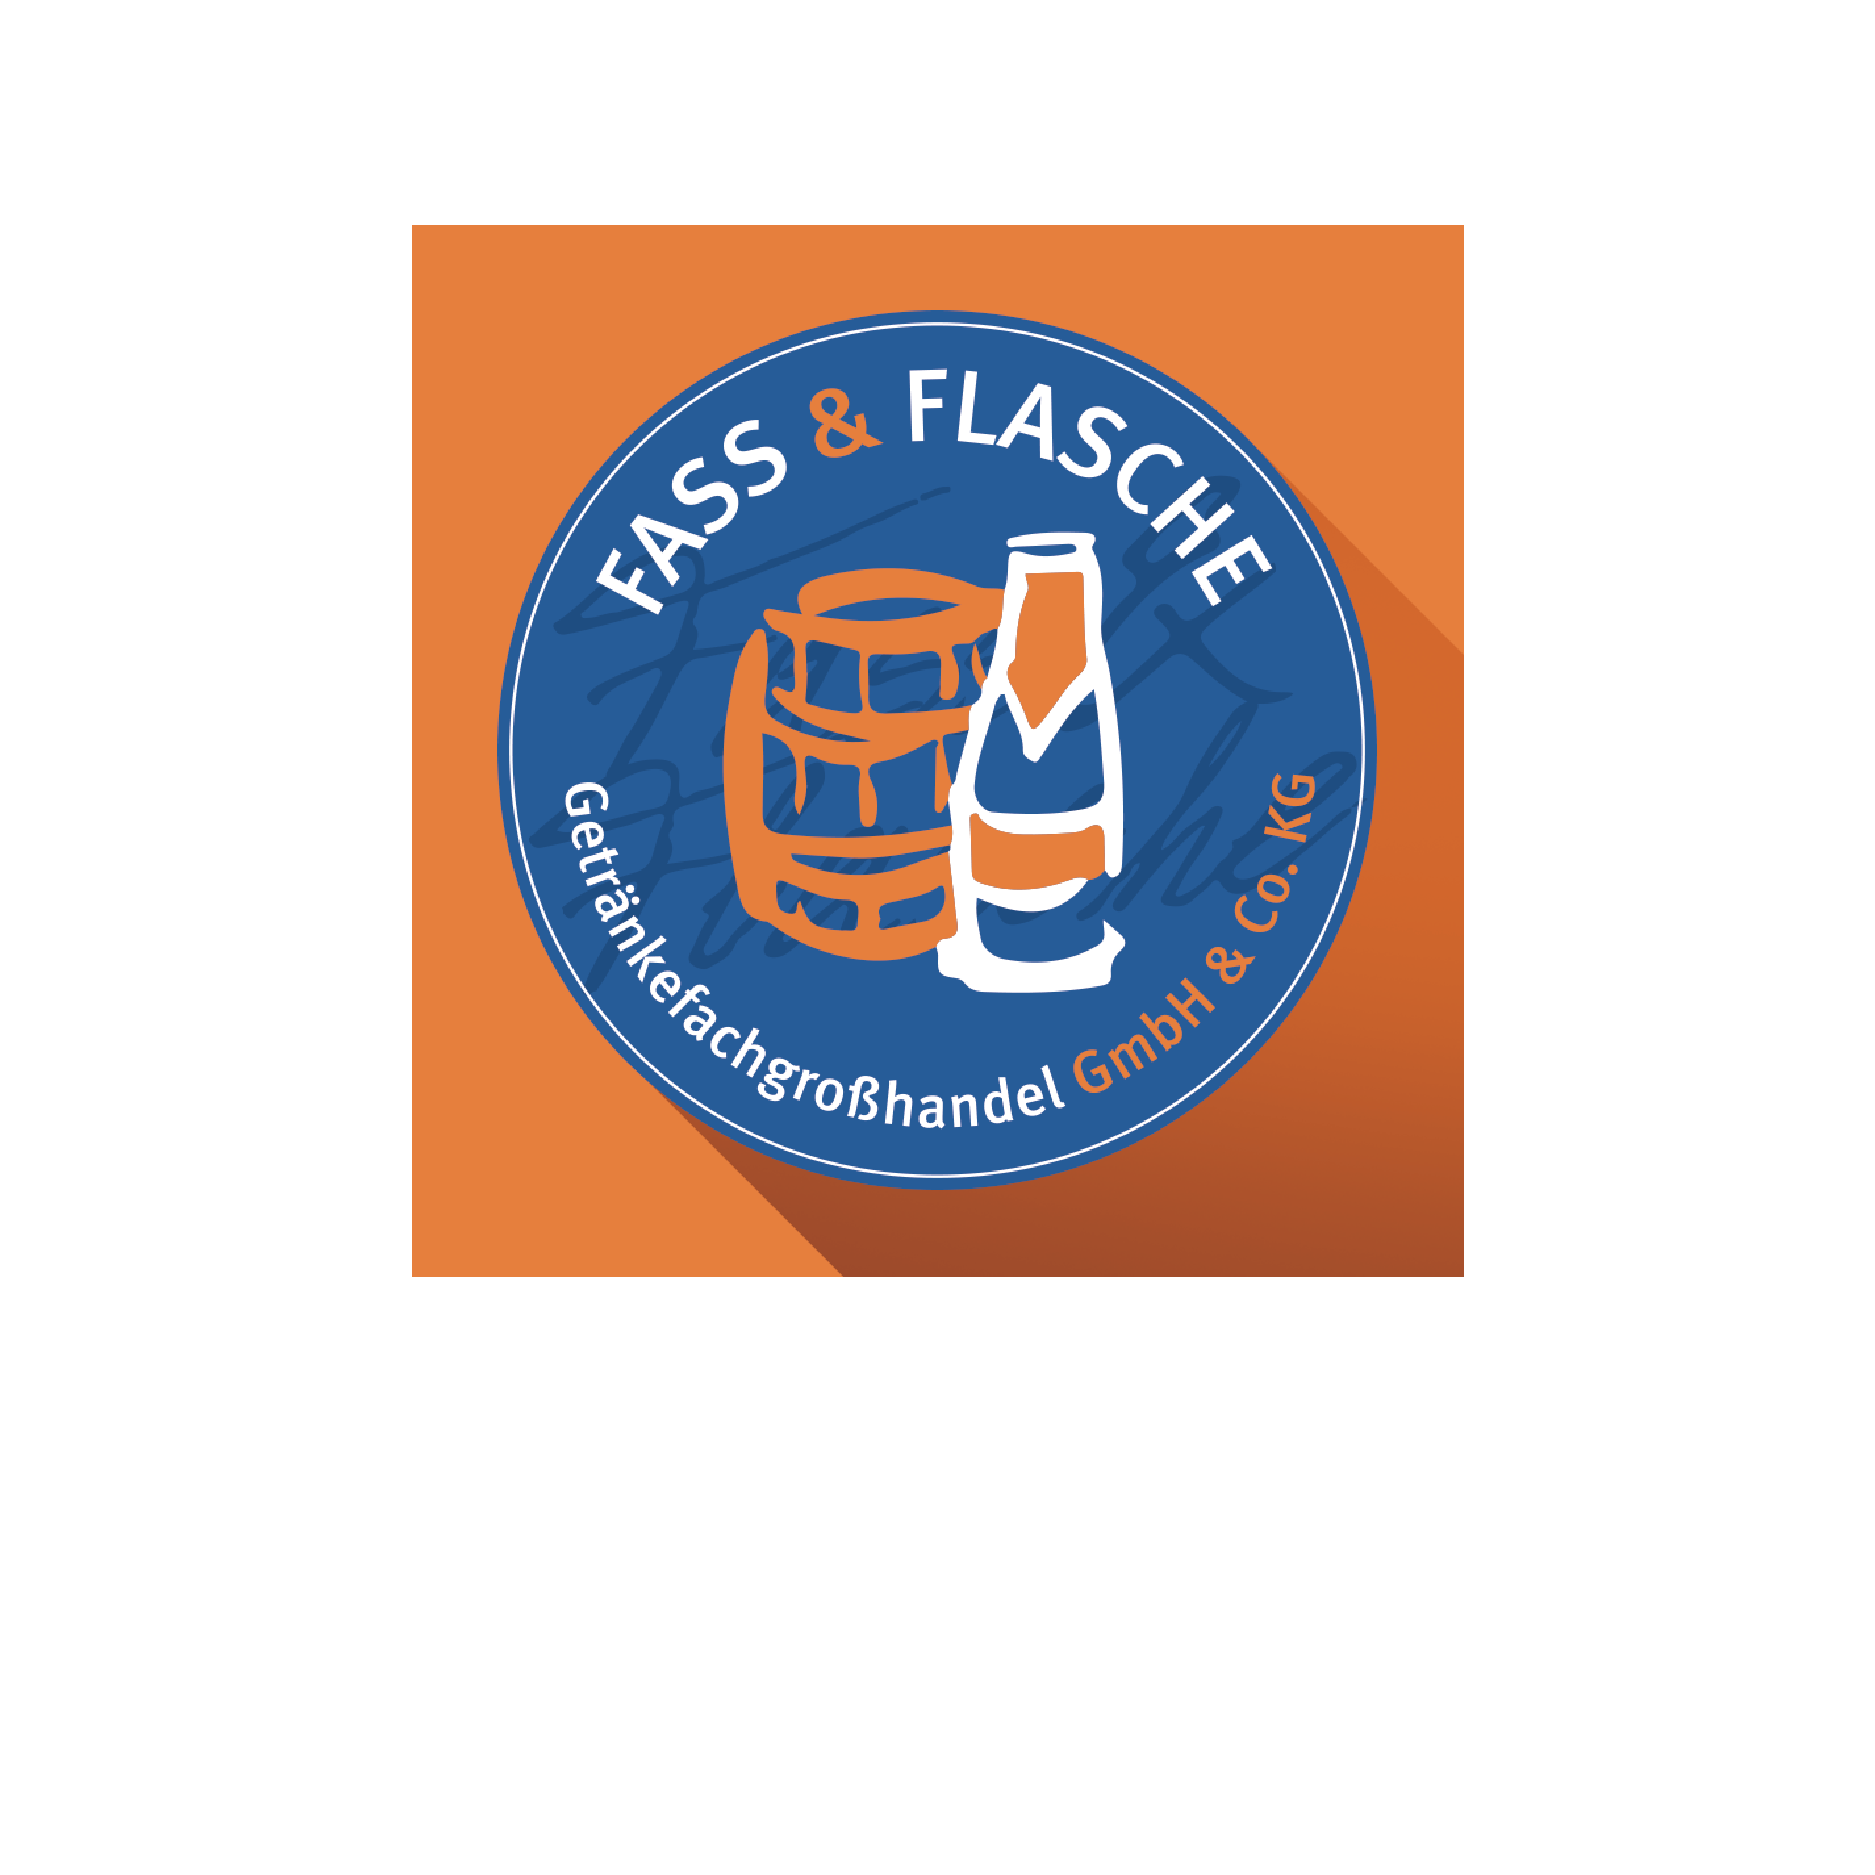 Fass-flasche-Empfehlungen-1x1.png